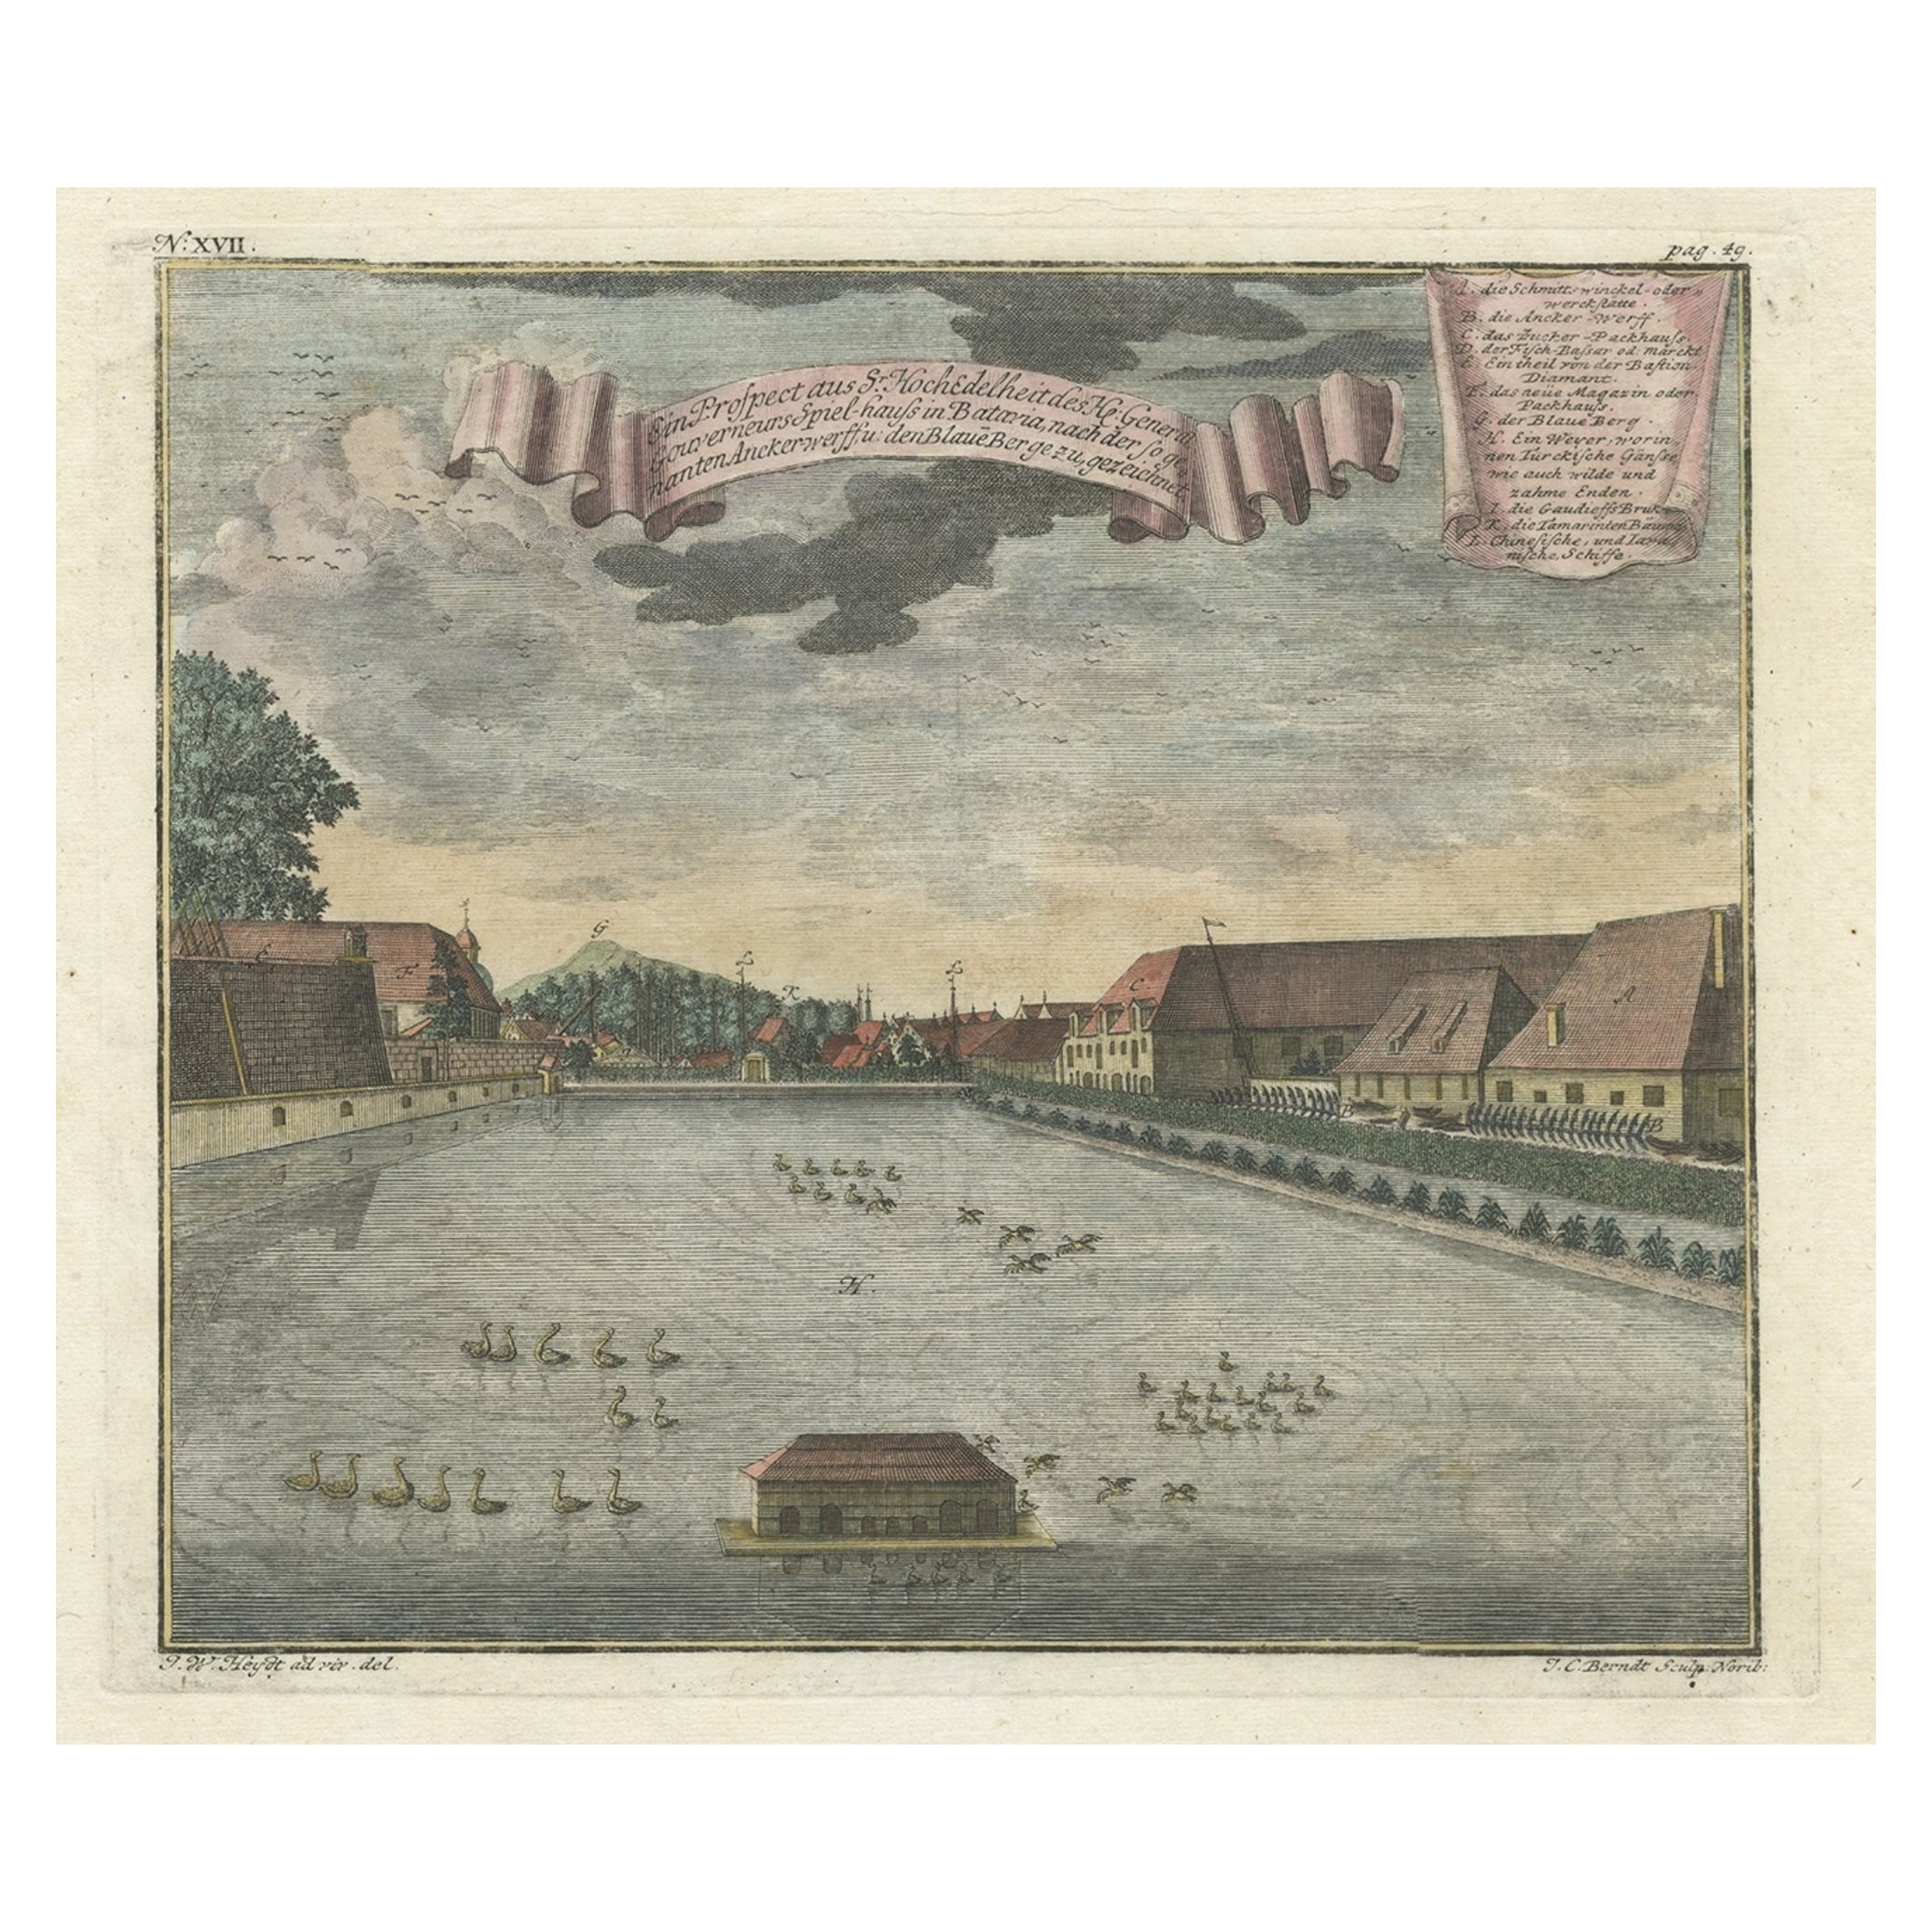 Impression des jardins d'agrément du gouverneur-général de Batavia, Indonésie, vers 1744